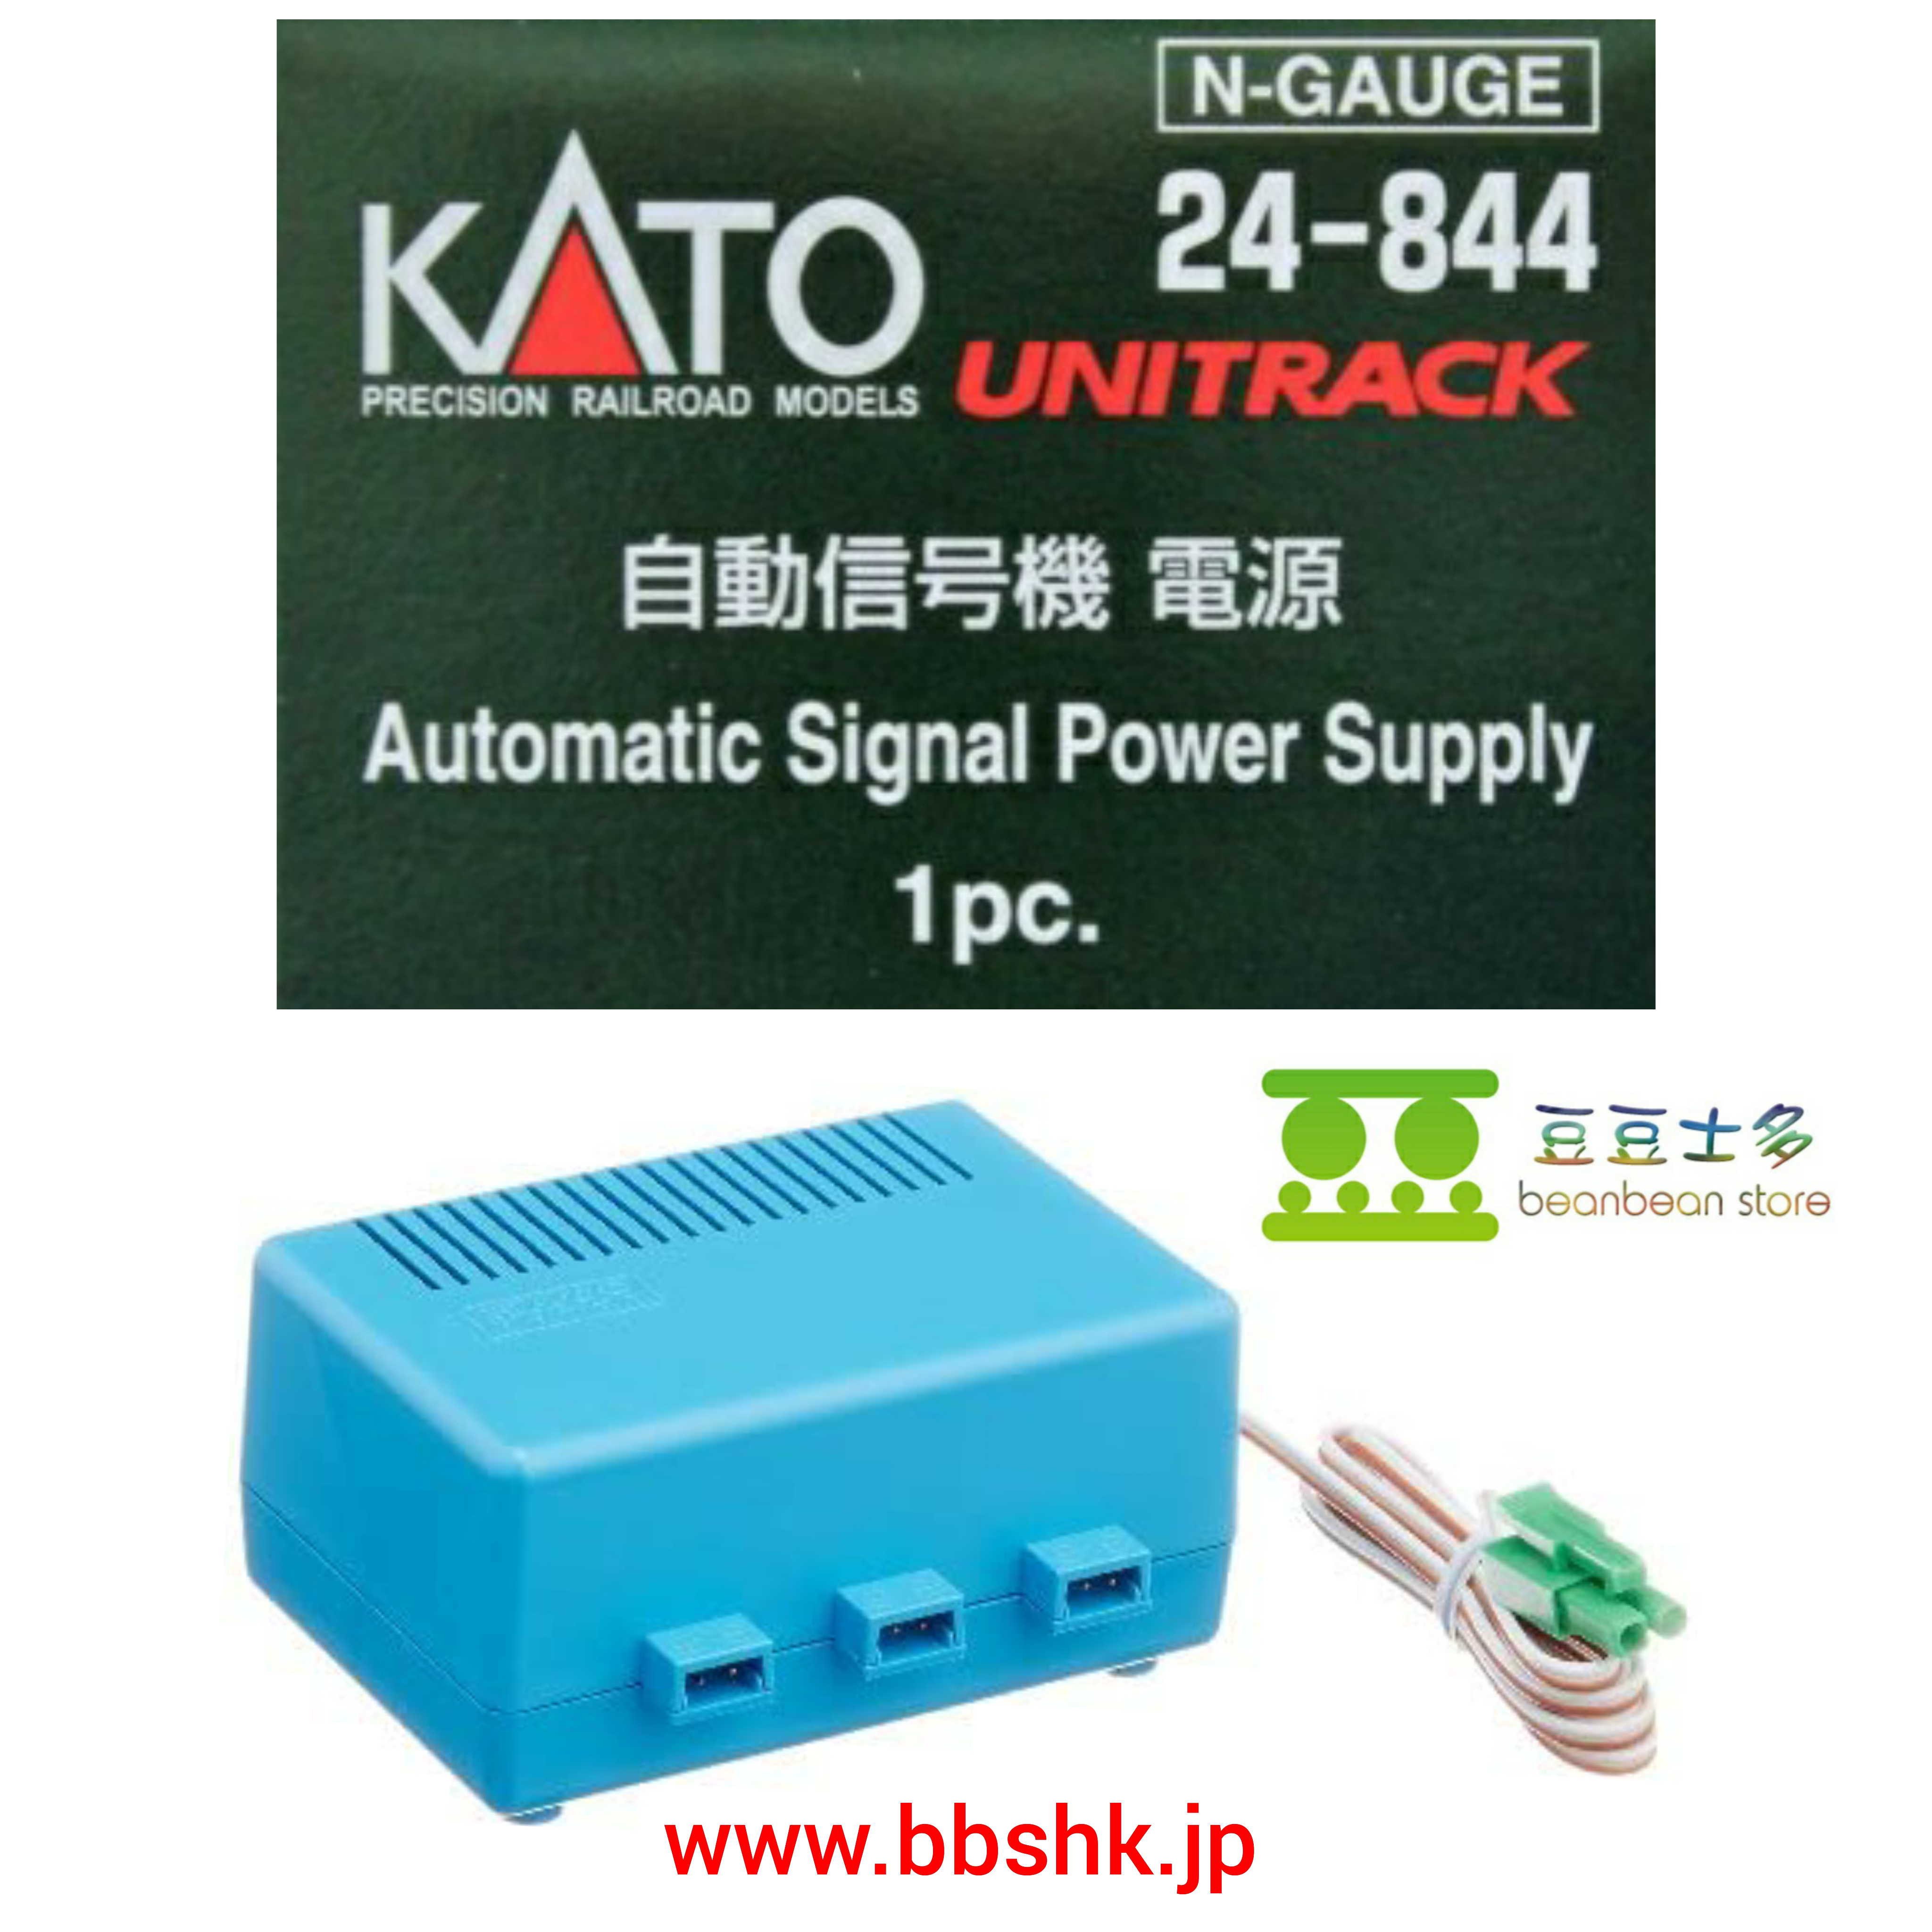 KATO 24-844 UNITRACK 自動信号機電源